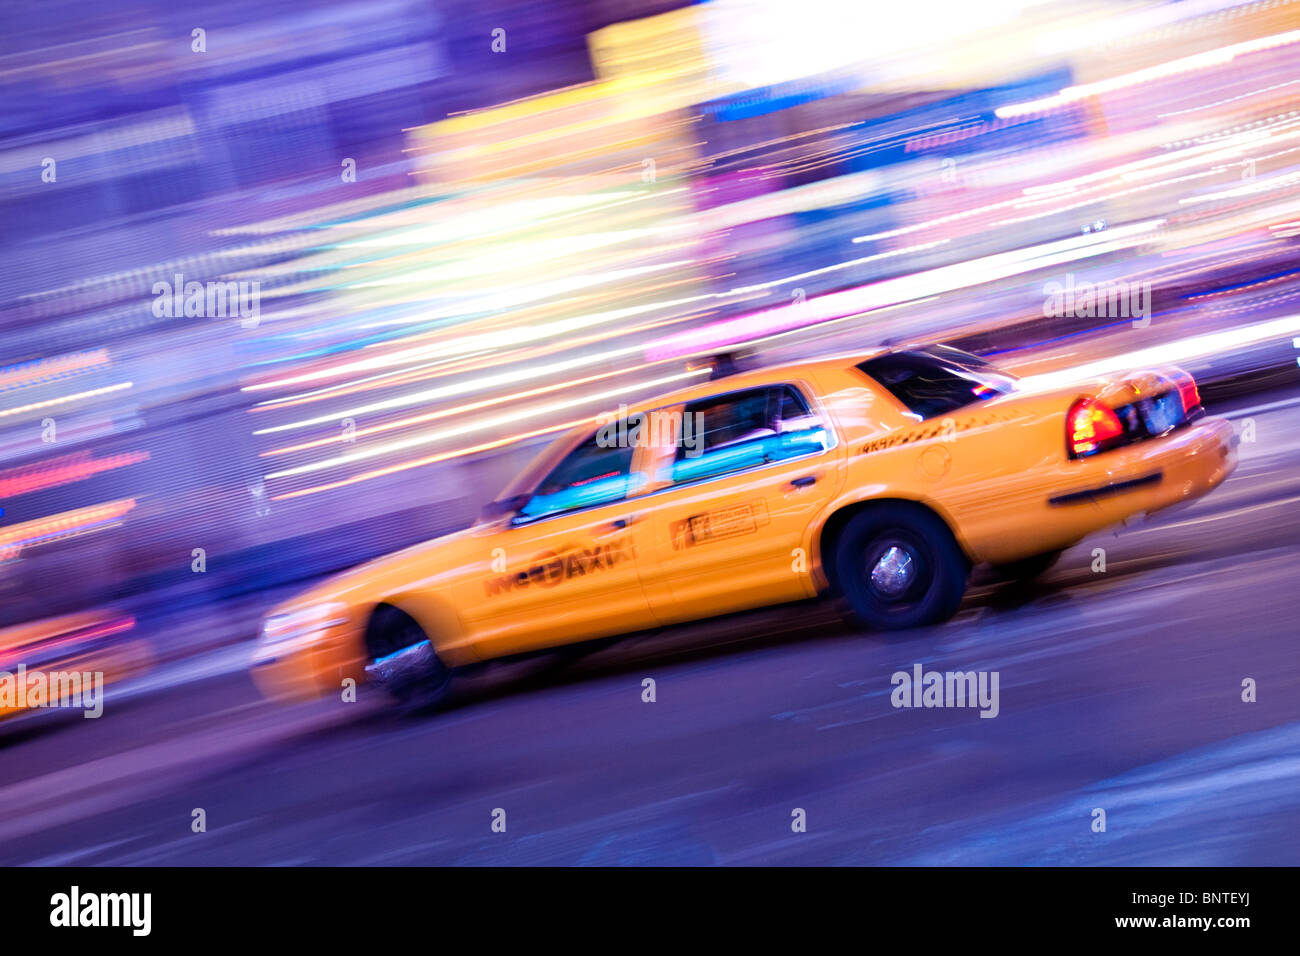 New York Yellow Cab, Manhattan, New York City, USA America Stock Photo